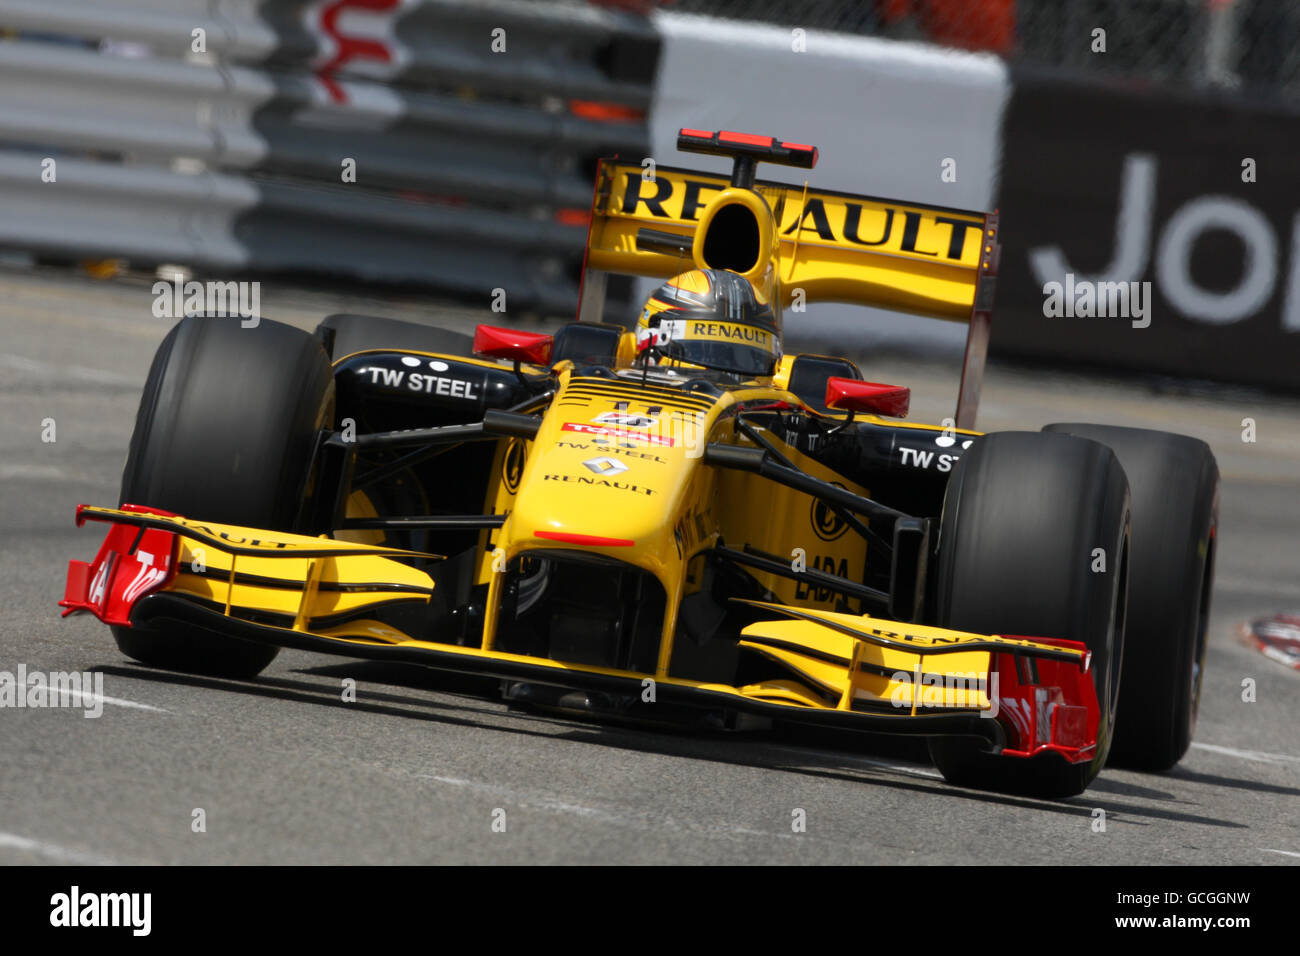 Carreras de Fórmula Uno - Gran Premio de Mónaco - Práctica y calificación - Circuito de Mónaco. Robert Kubica (POL), Renault. Foto de stock